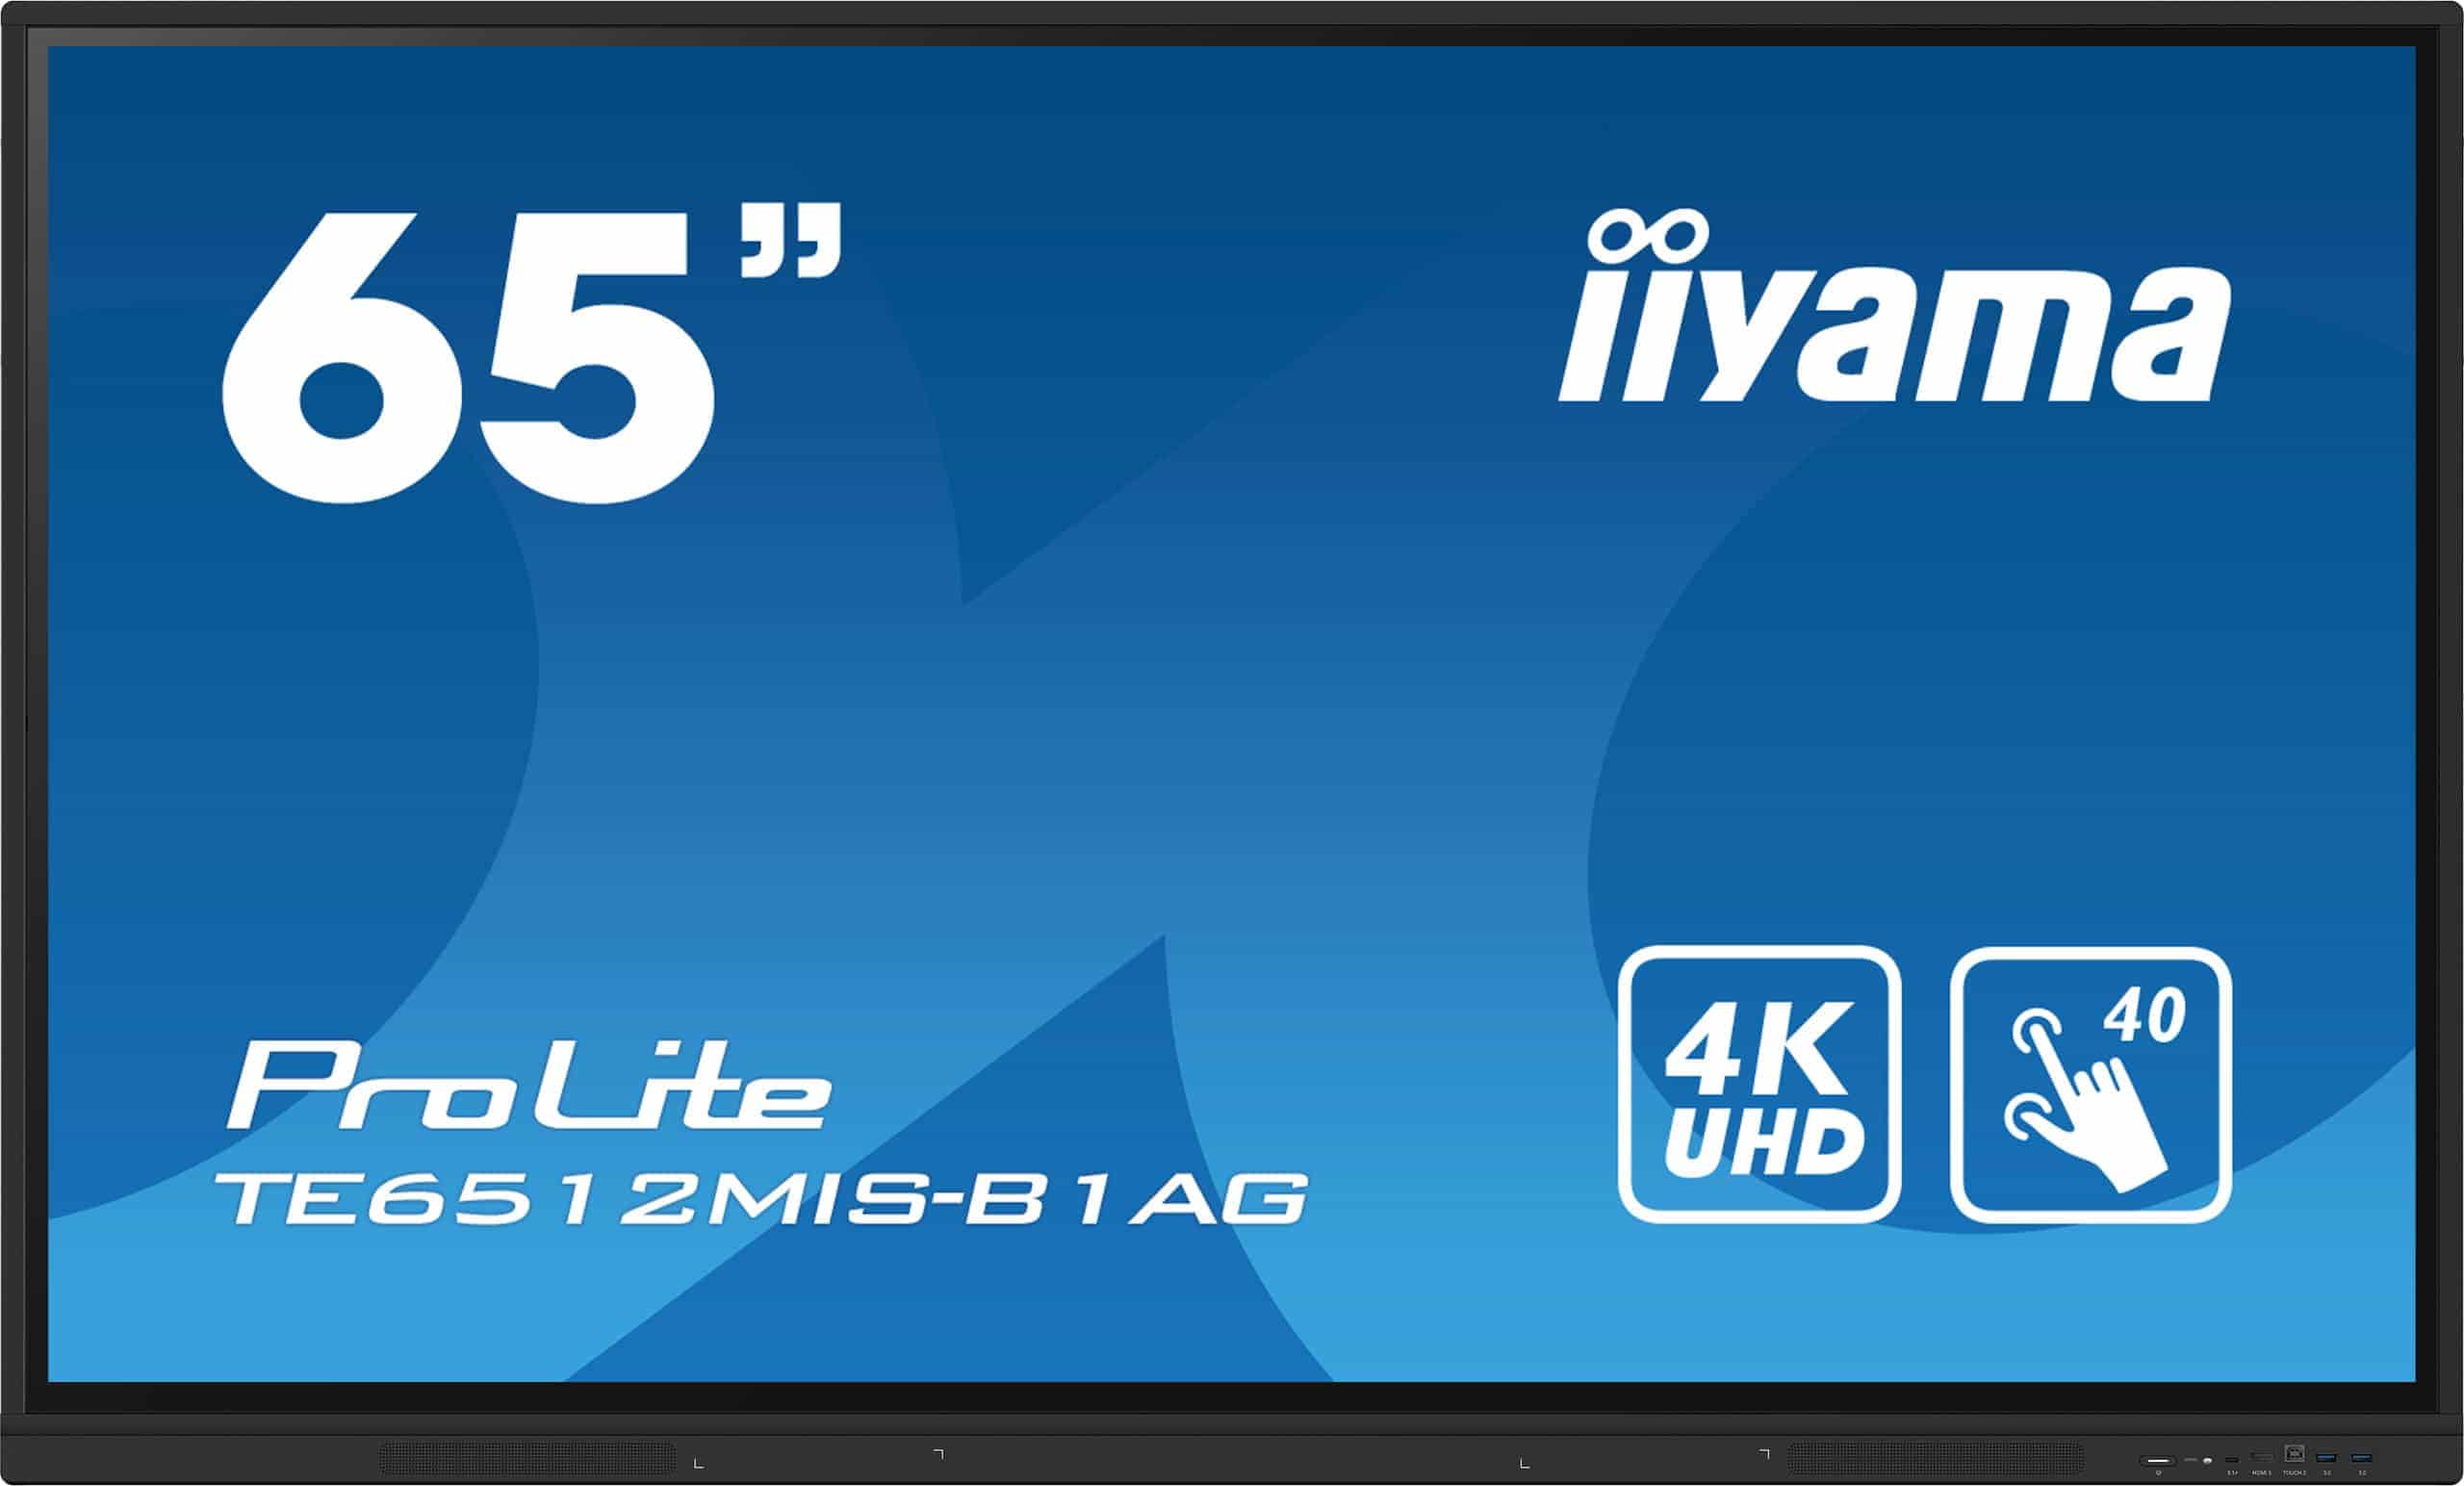 Iiyama ProLite TE6512MIS-B1AG | Interaktives 65" LCD Touchscreen-Display mit 4K-Auflösung, integrierter Whiteboard-Software und Benutzerprofilen